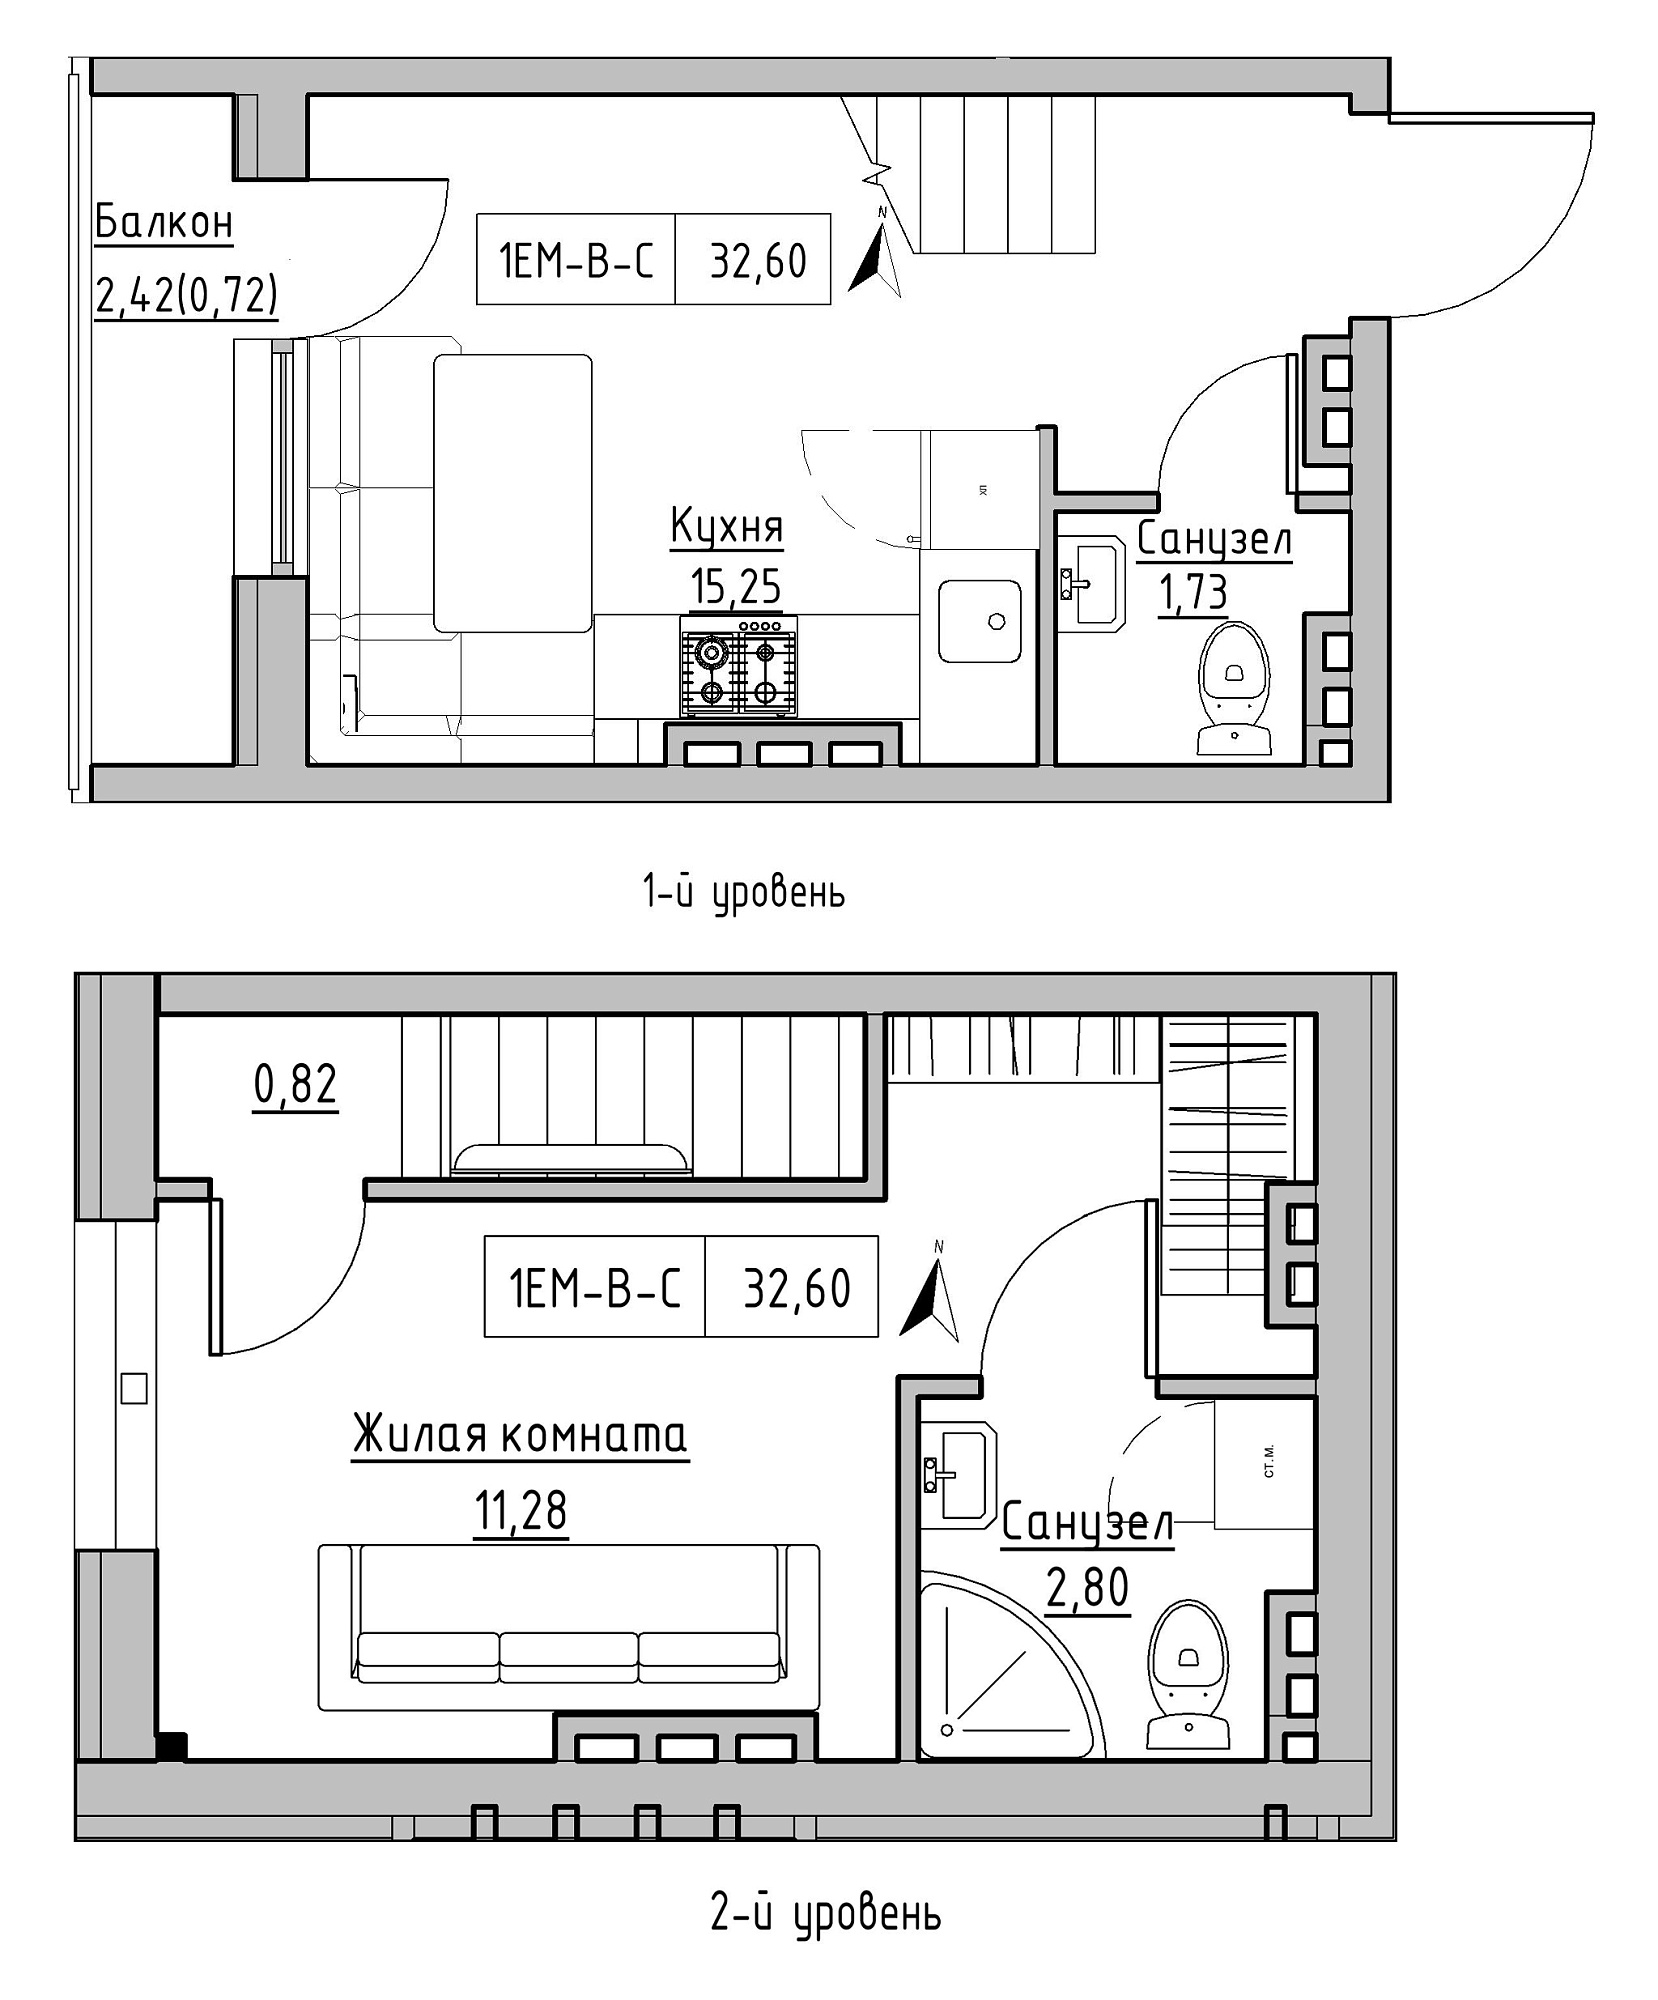 Planning 2-lvl flats area 32.6m2, KS-024-05/0012.